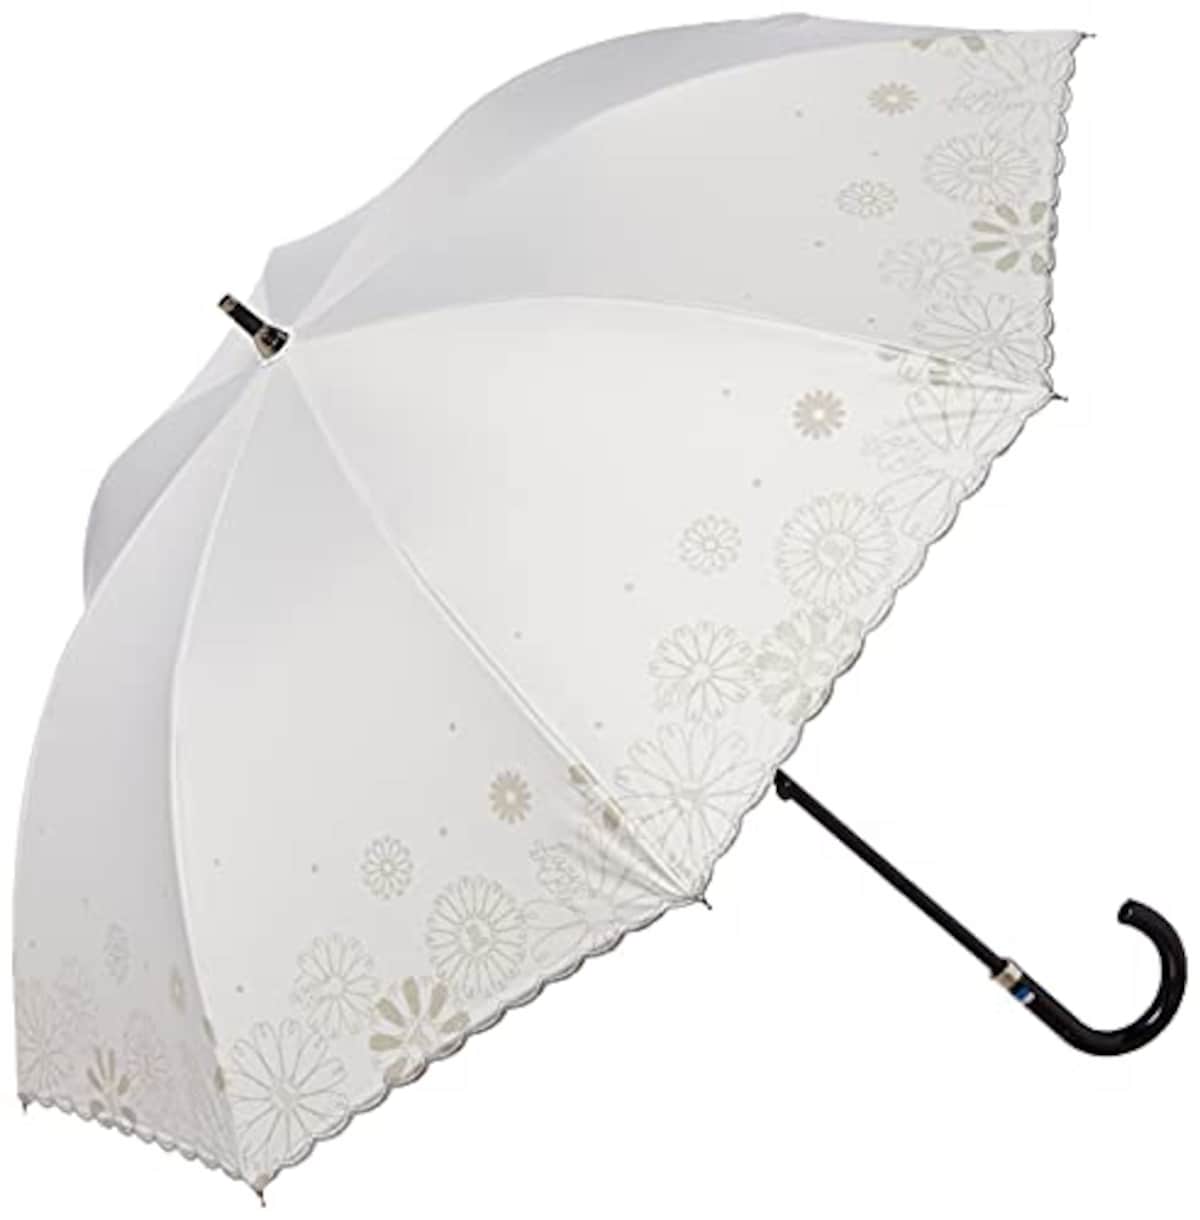  MOONBAT（ムーンバット）晴雨兼用傘